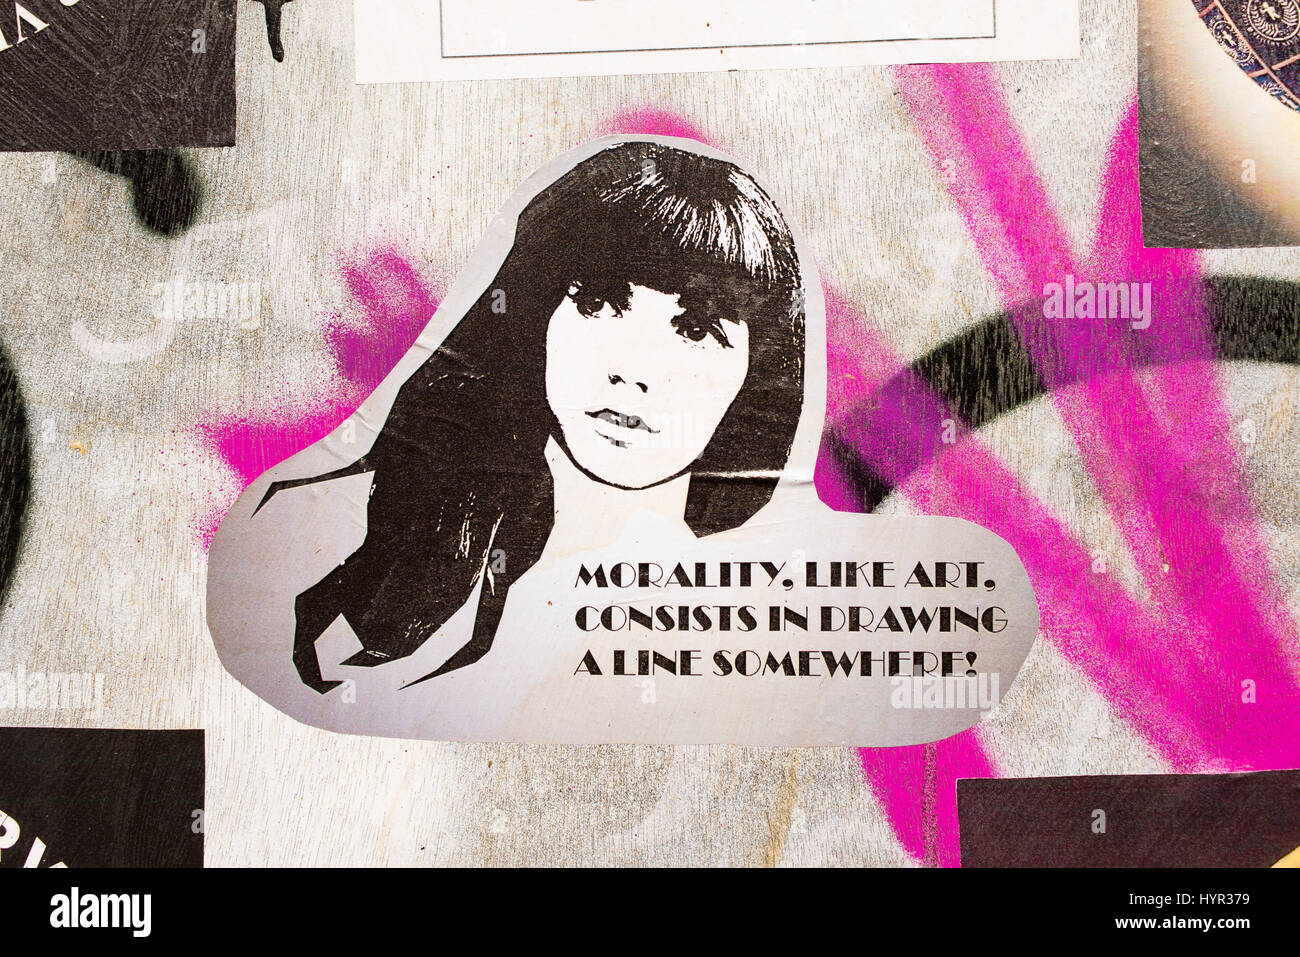 Sticker sur un mur avec femme et citer "l'oralité, comme l'art, consiste à tracer une ligne quelque part !" Banque D'Images